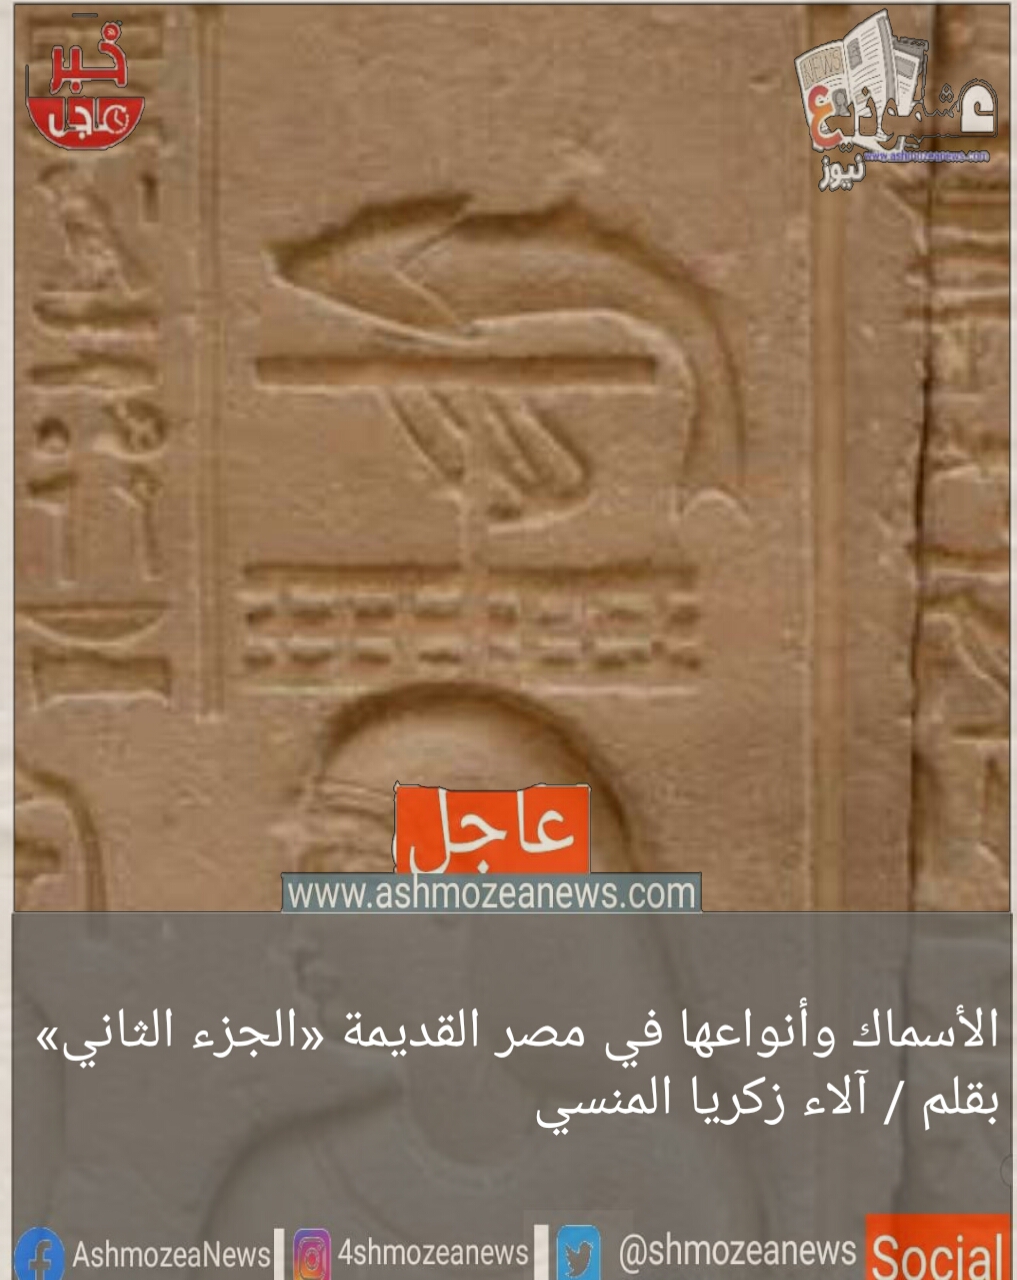 الأسماك وأنواعها في مصر القديمة «الجزء الثاني»